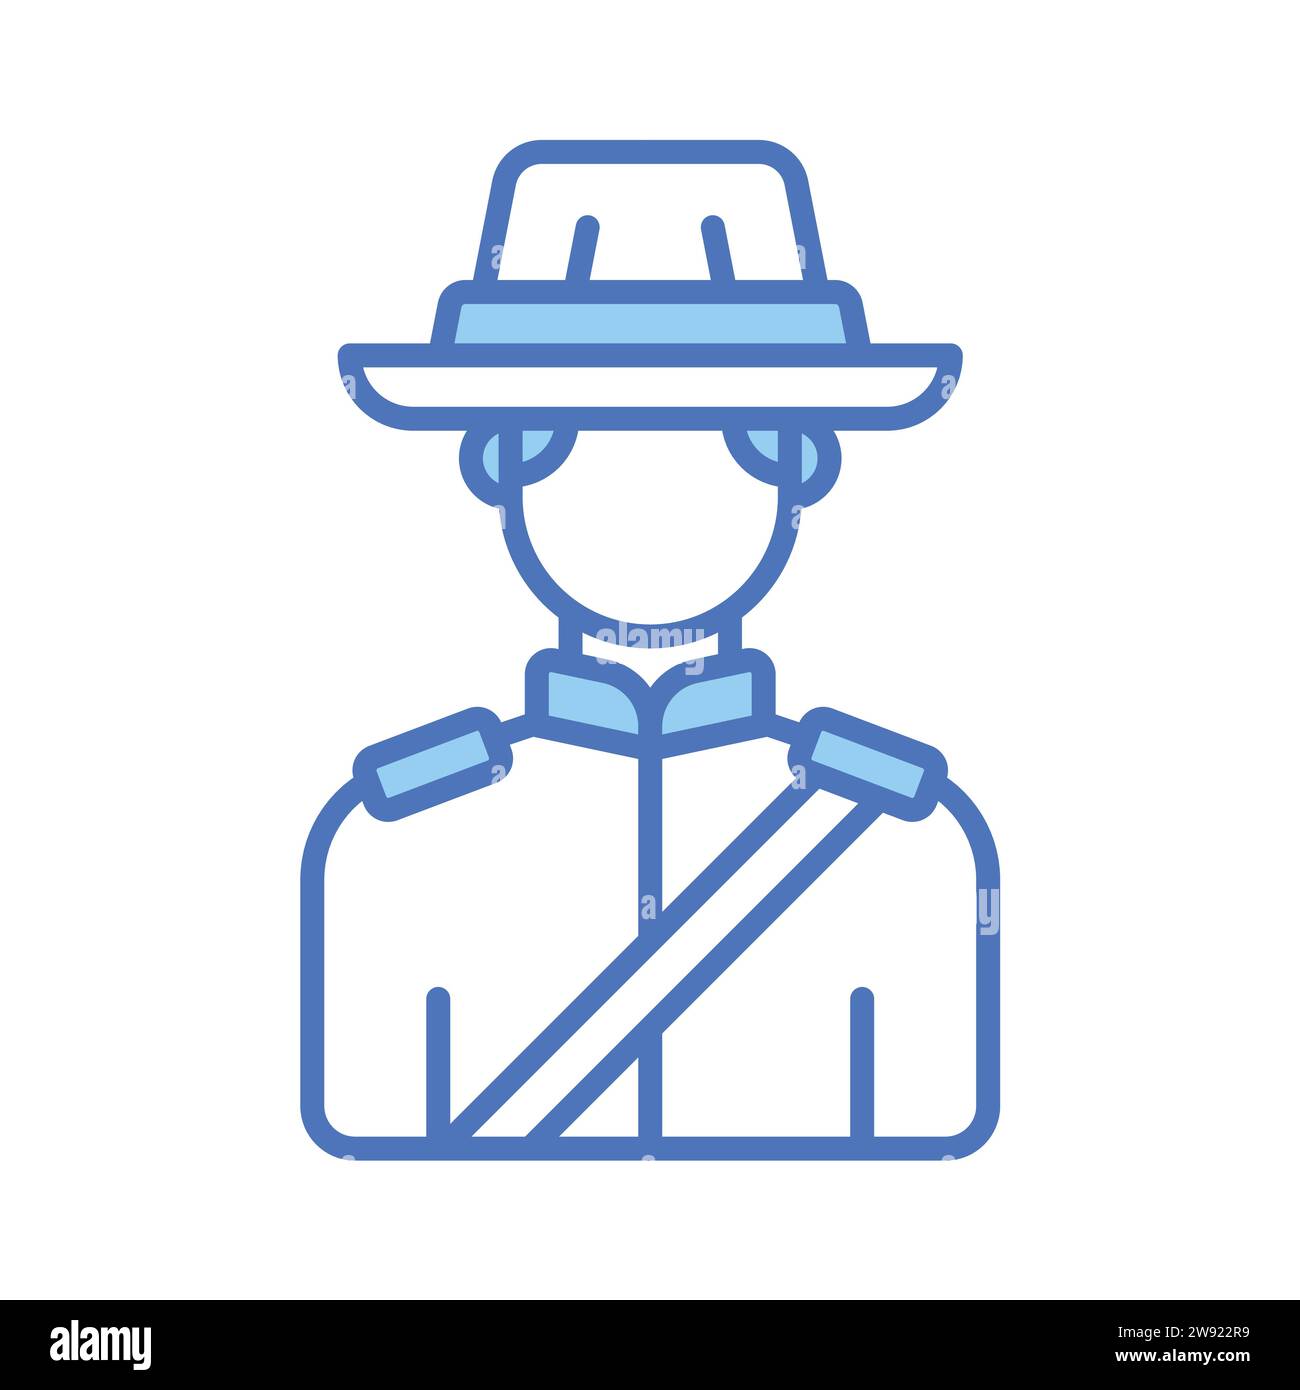 Simbolo di un ufficiale di polizia canadese con design vettoriale in stile trendy, pronto per l'uso e il download Illustrazione Vettoriale